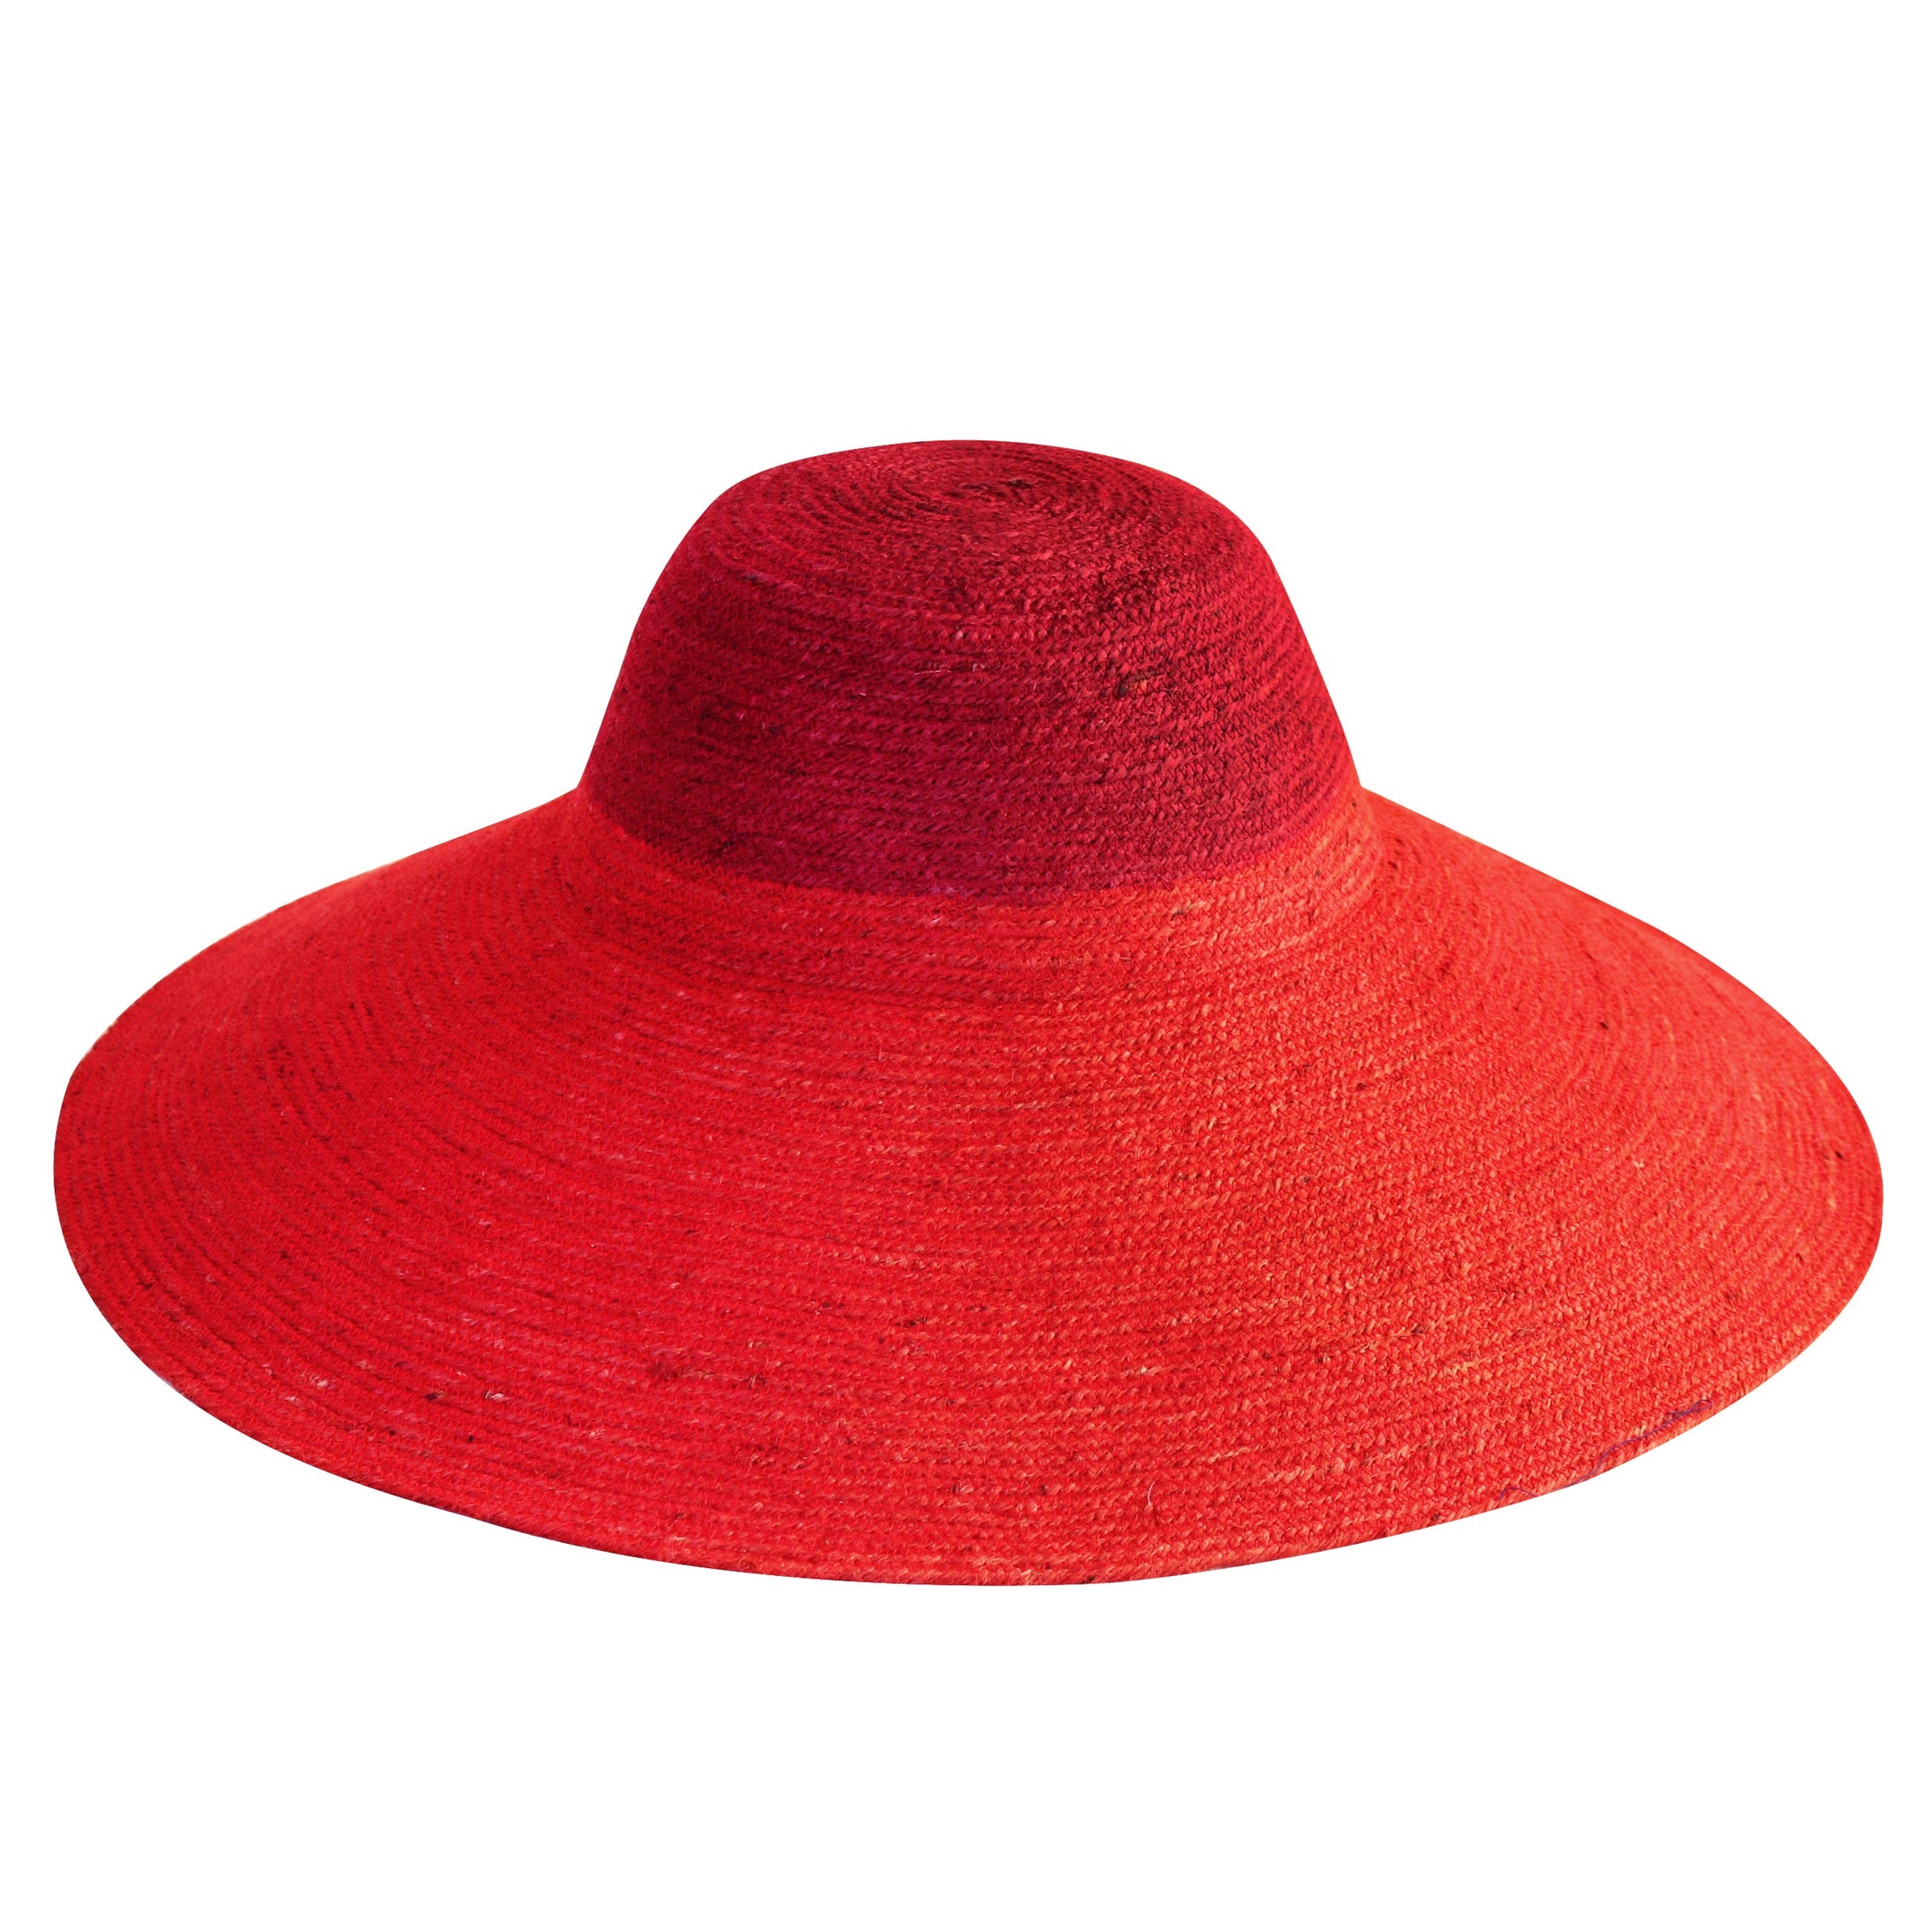 Buy RIRI DUO Jute Straw Hat, in Maroon & Red by BrunnaCo